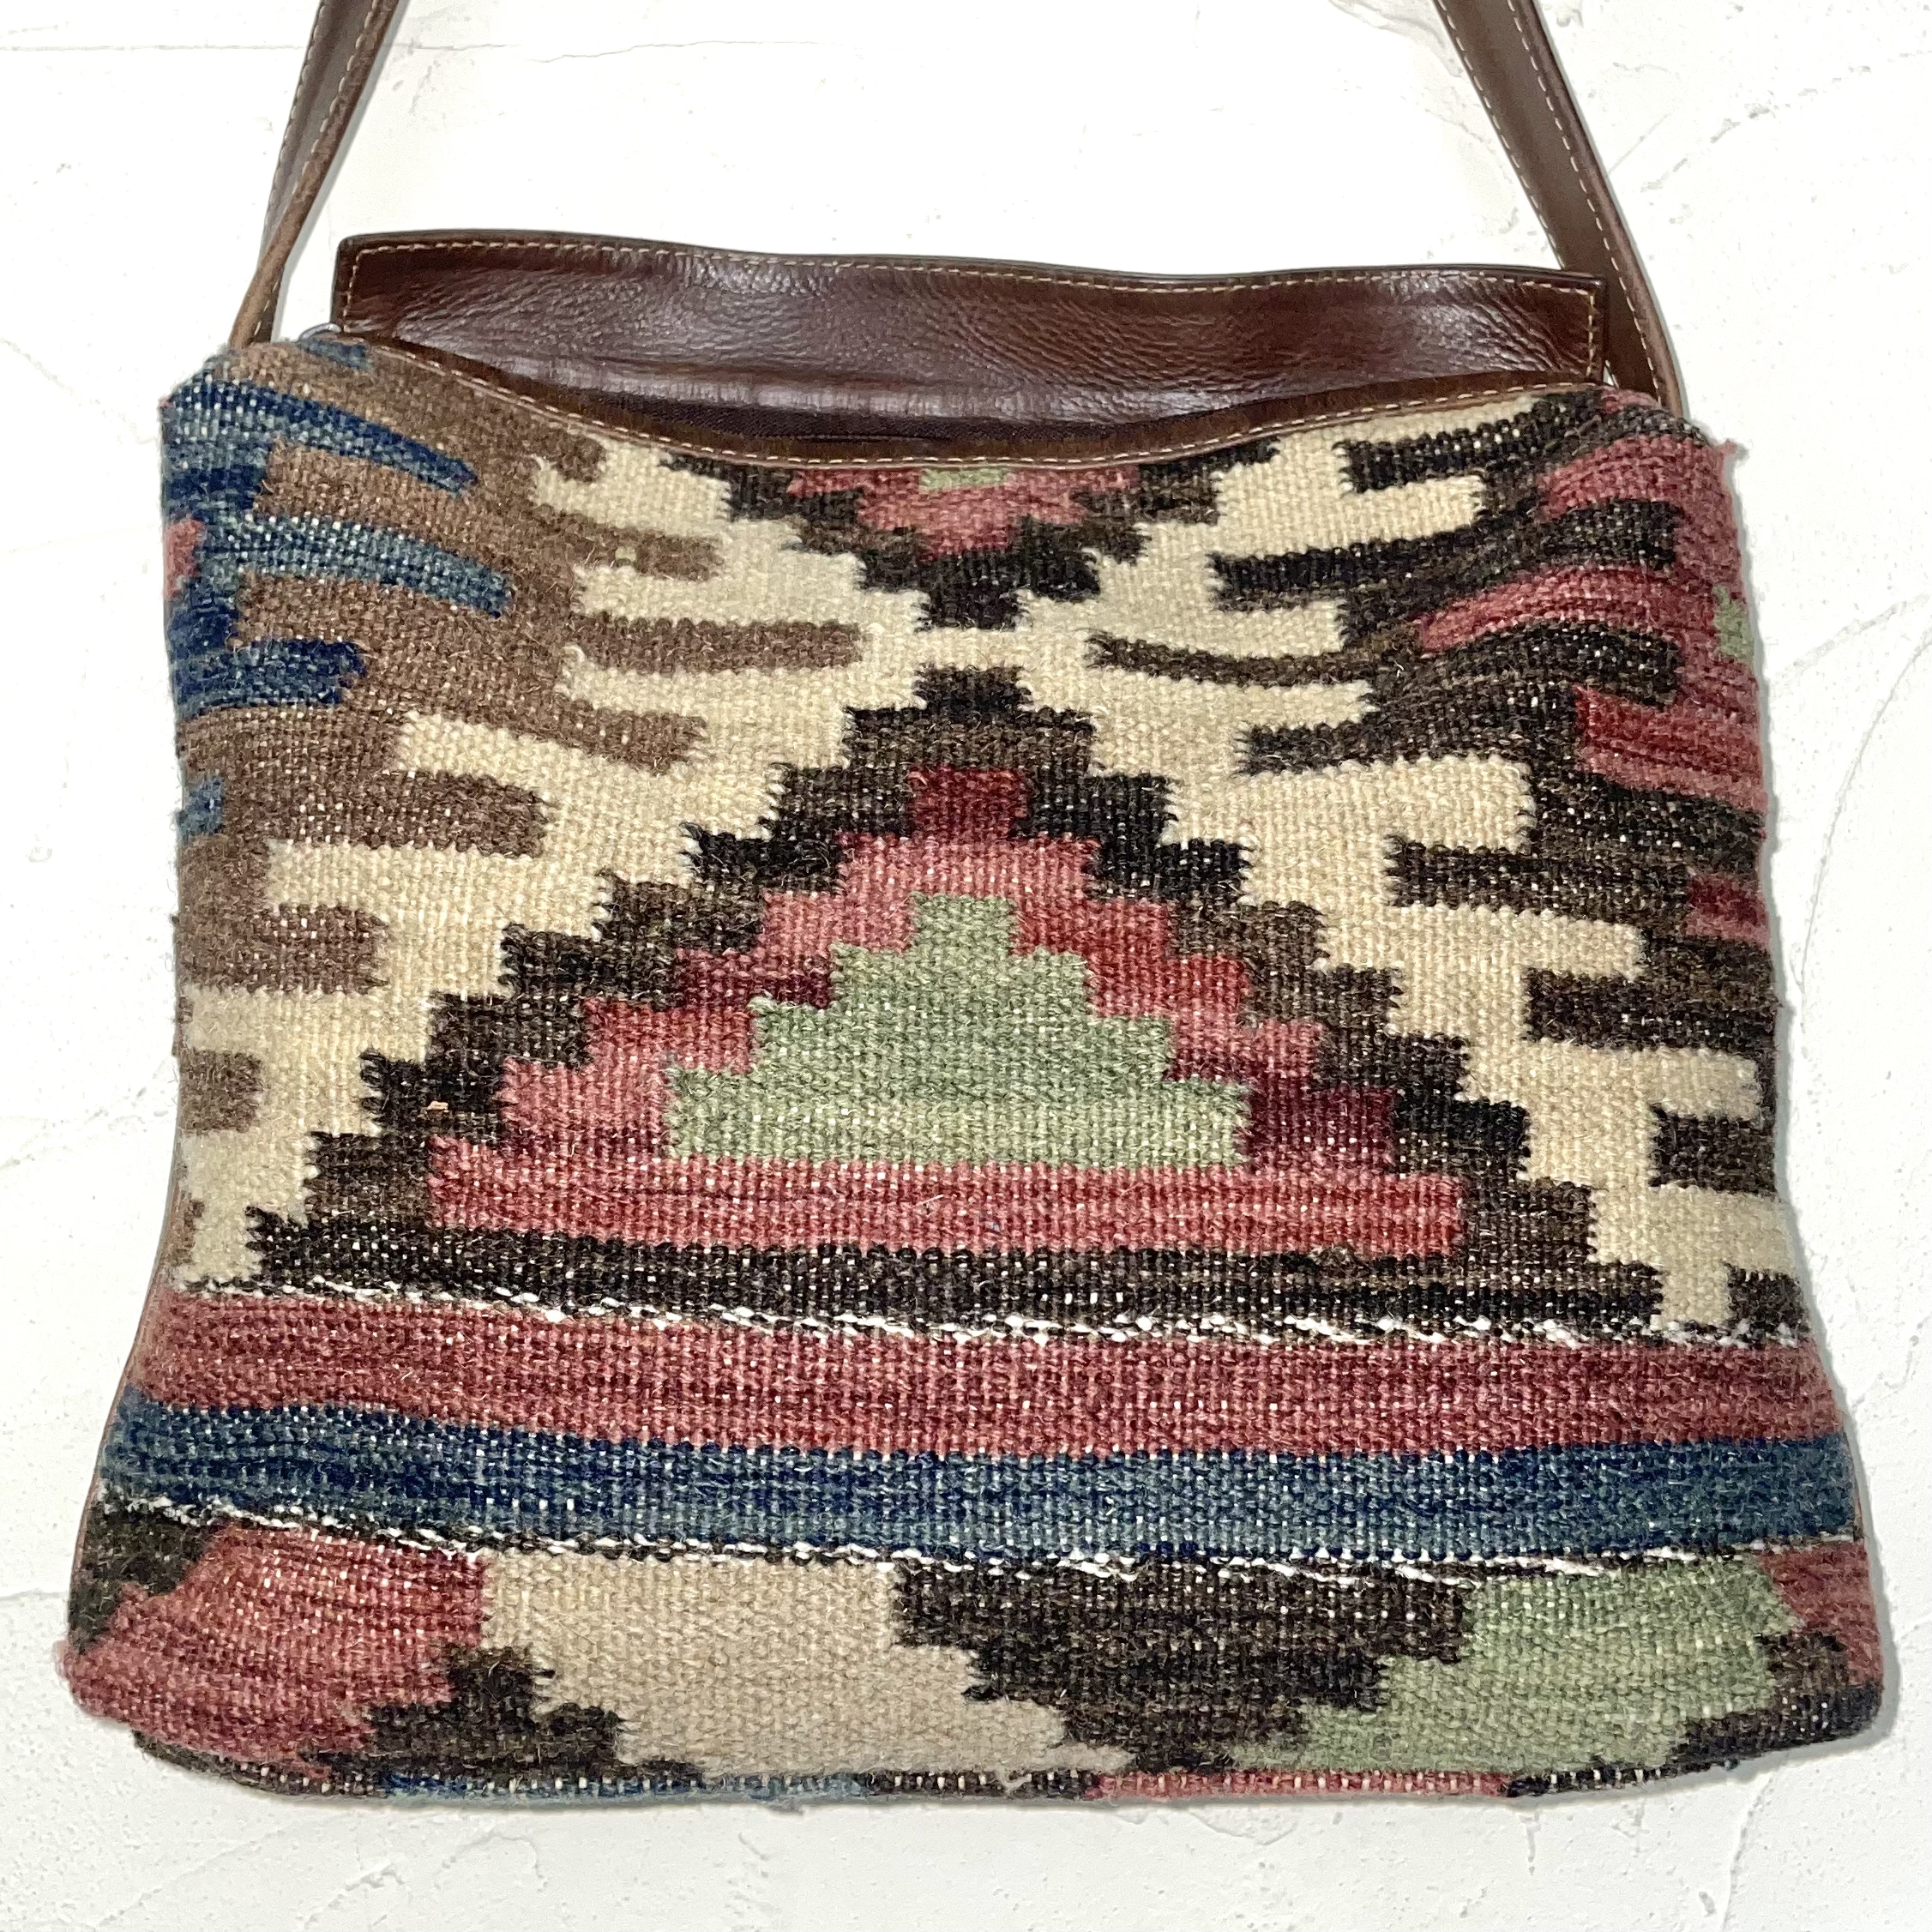 India native pattern shoulder bag